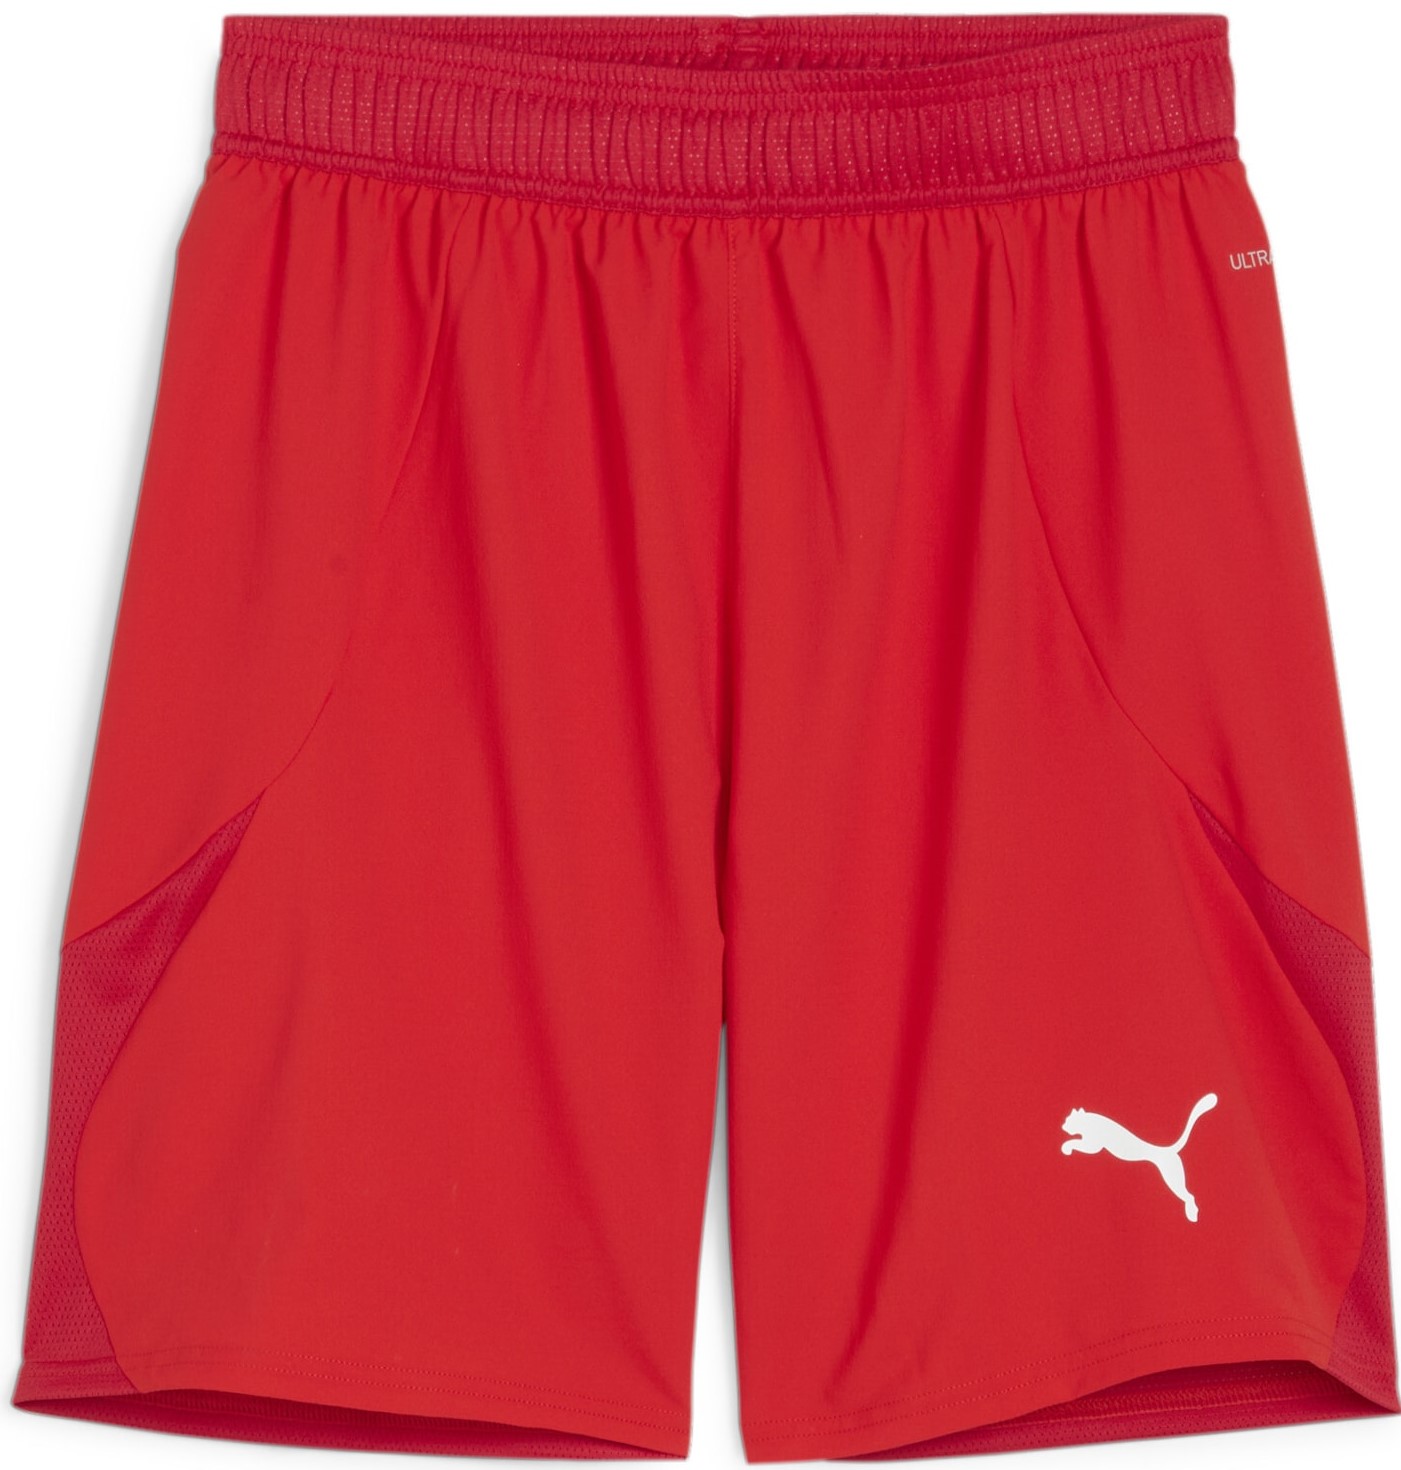 Šortky Puma teamFINAL Shorts